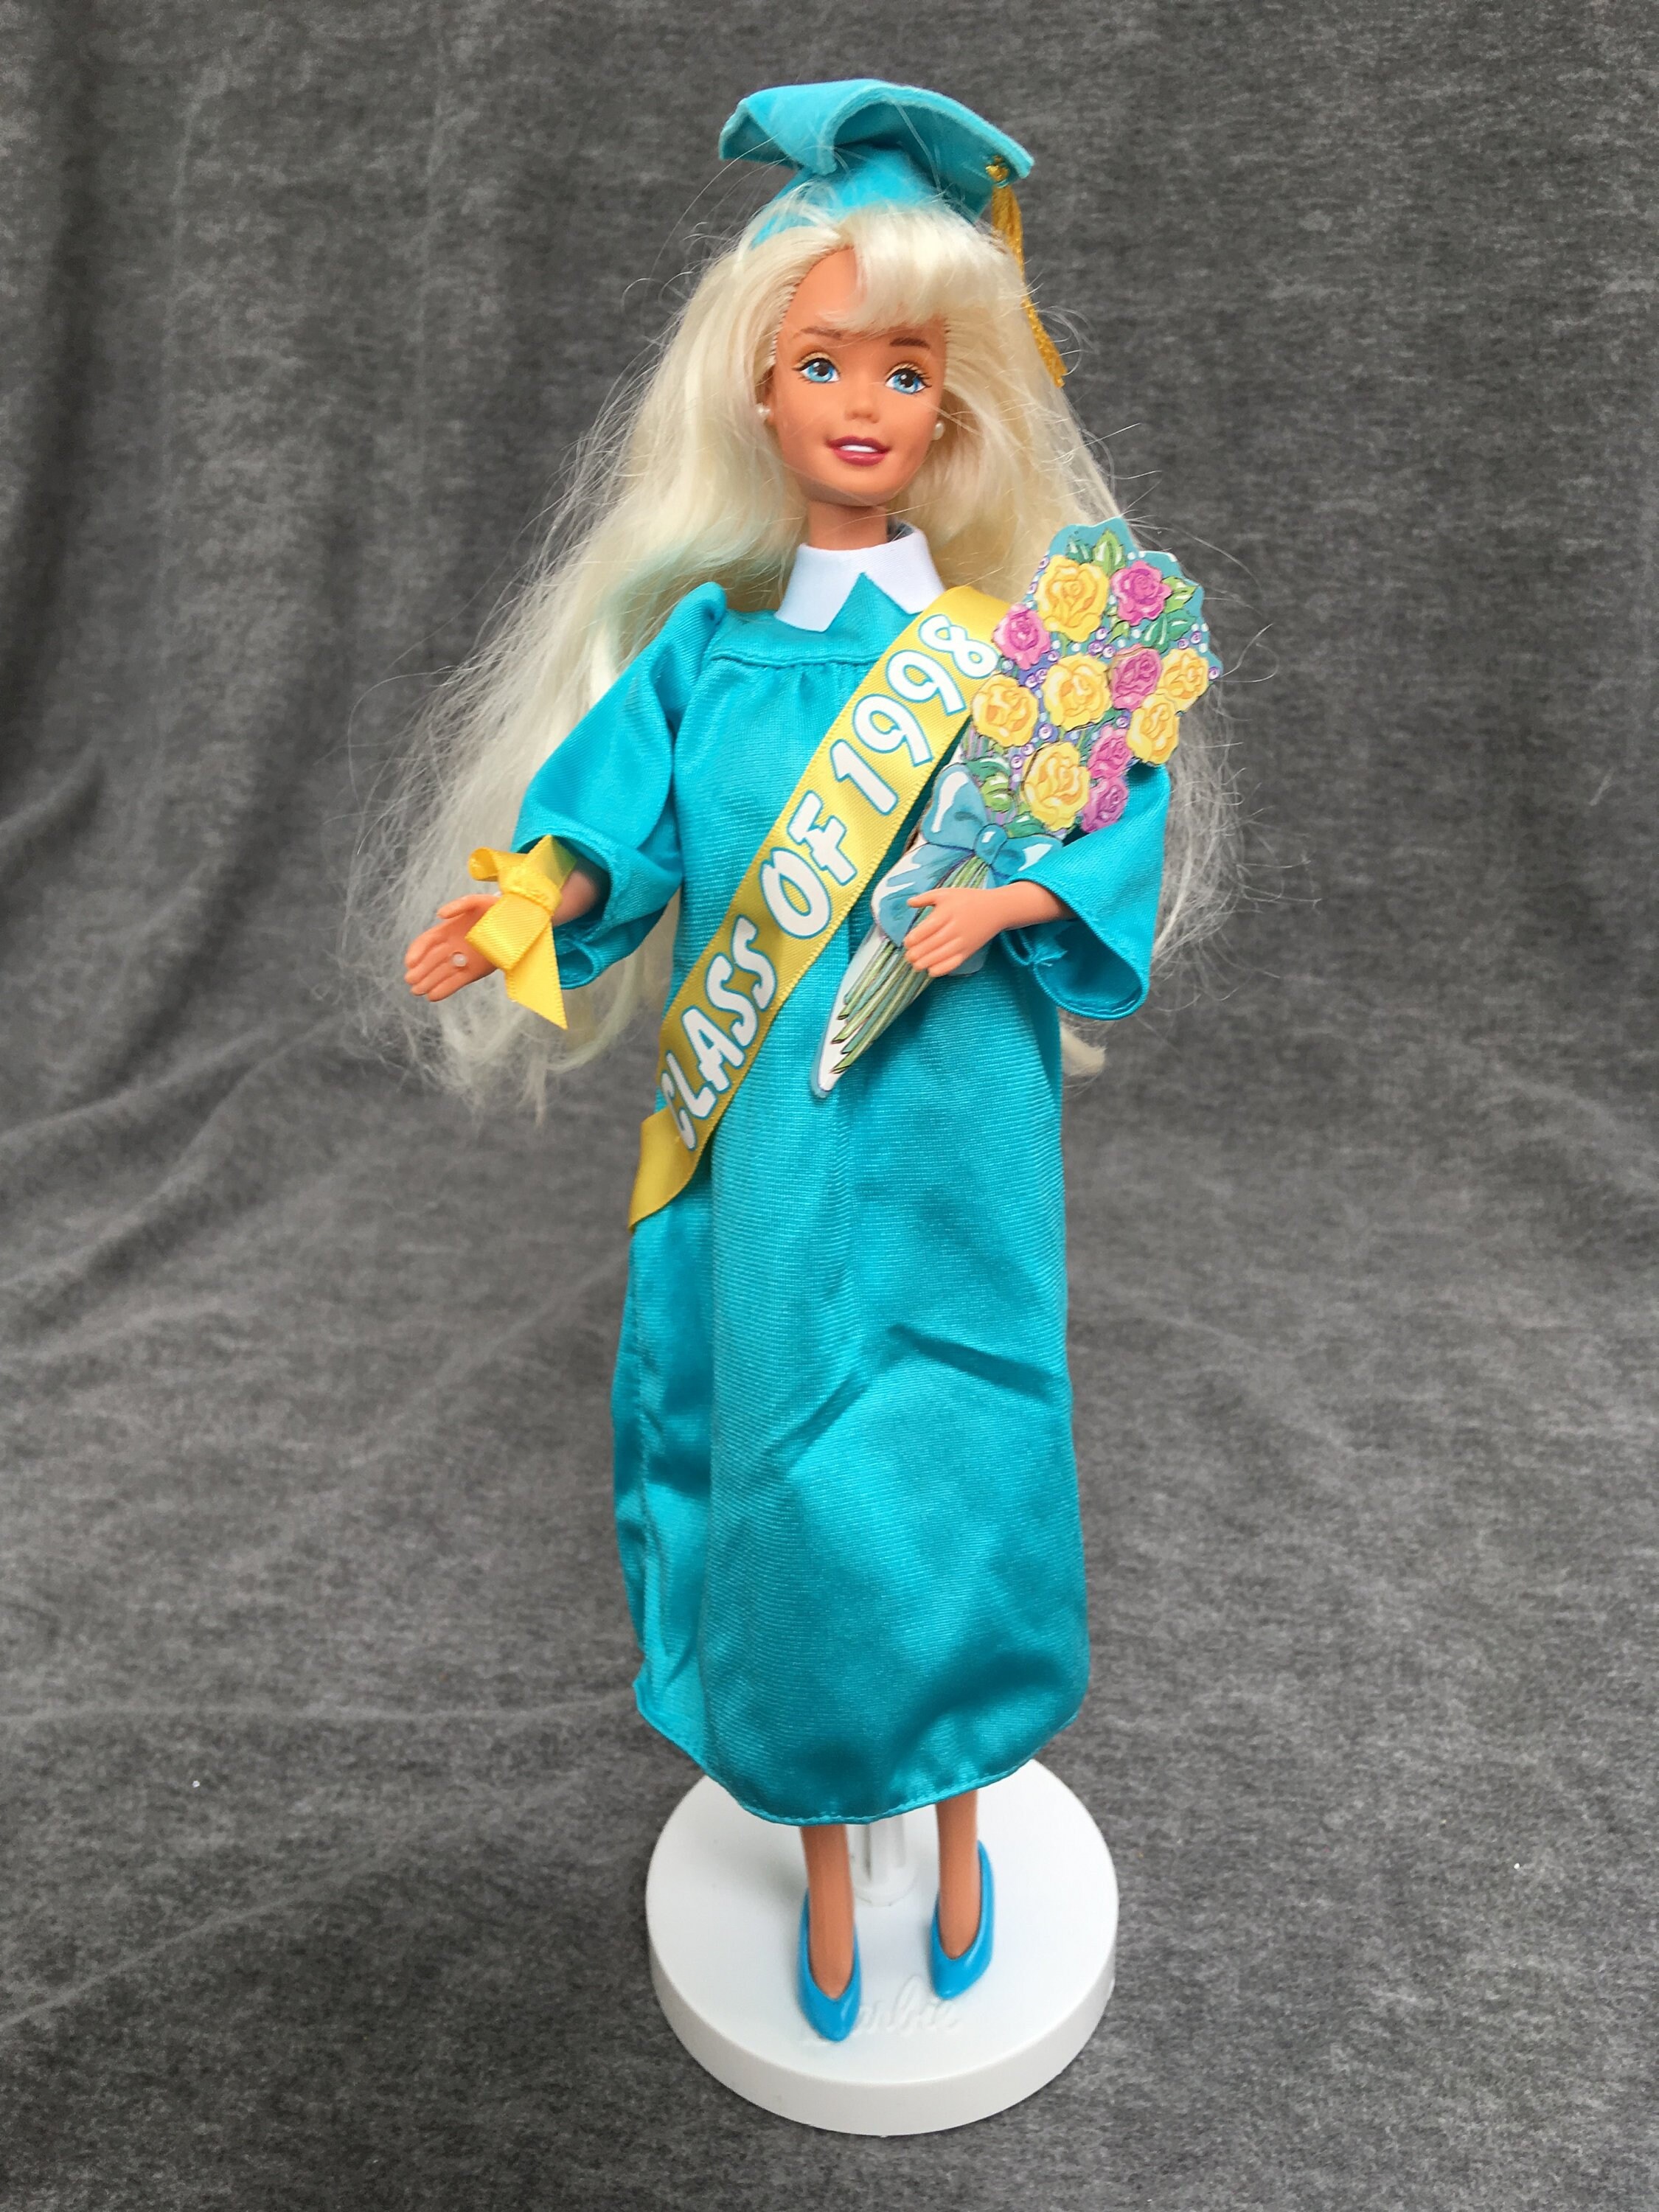 Portaal keuken Gemoedsrust Class of 1998 Graduation Barbie by Mattel | Etsy